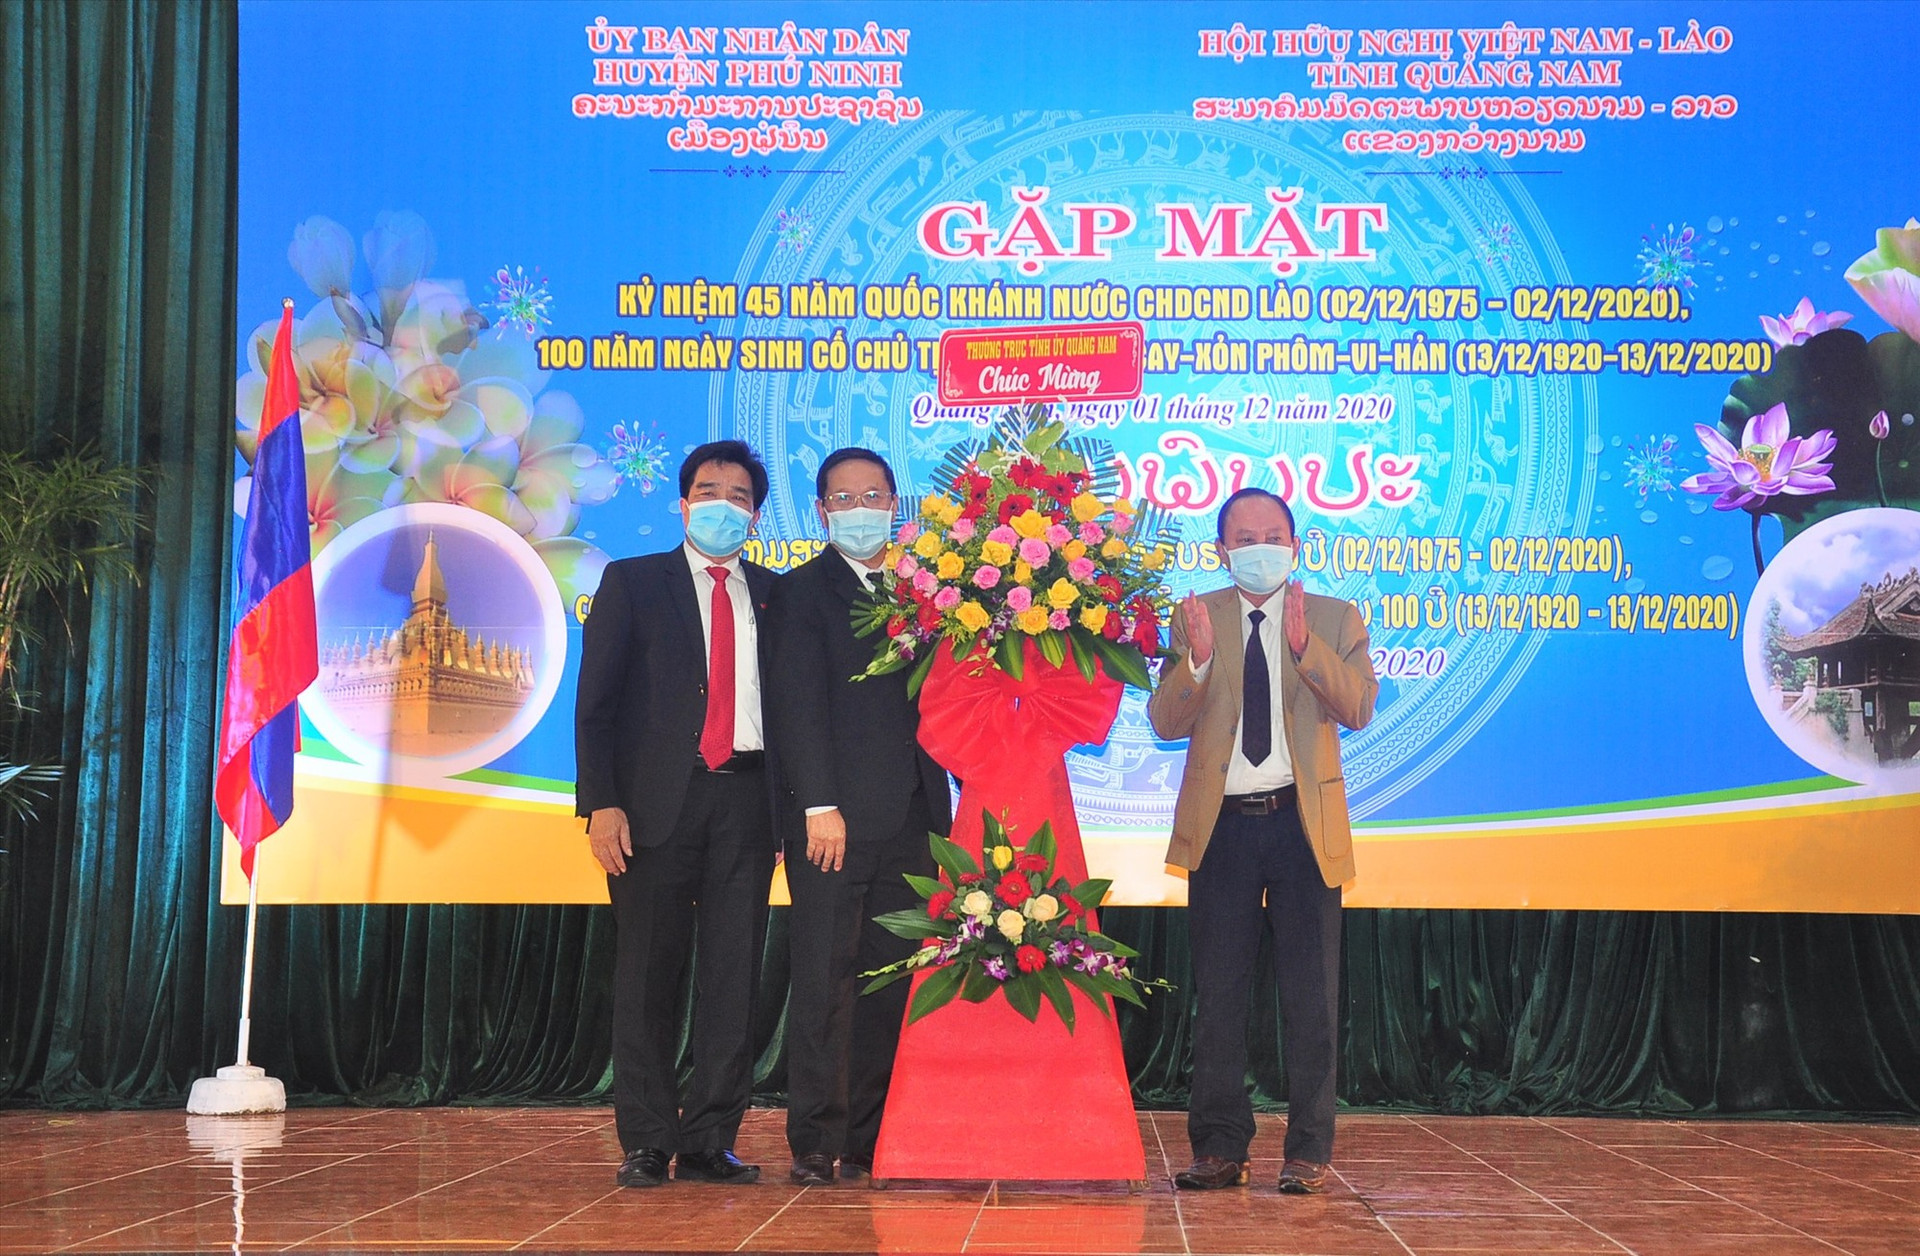 Lãnh đạo tỉnh và huyện Phú Ninh tặng lẵng hoa chúc mừng đến